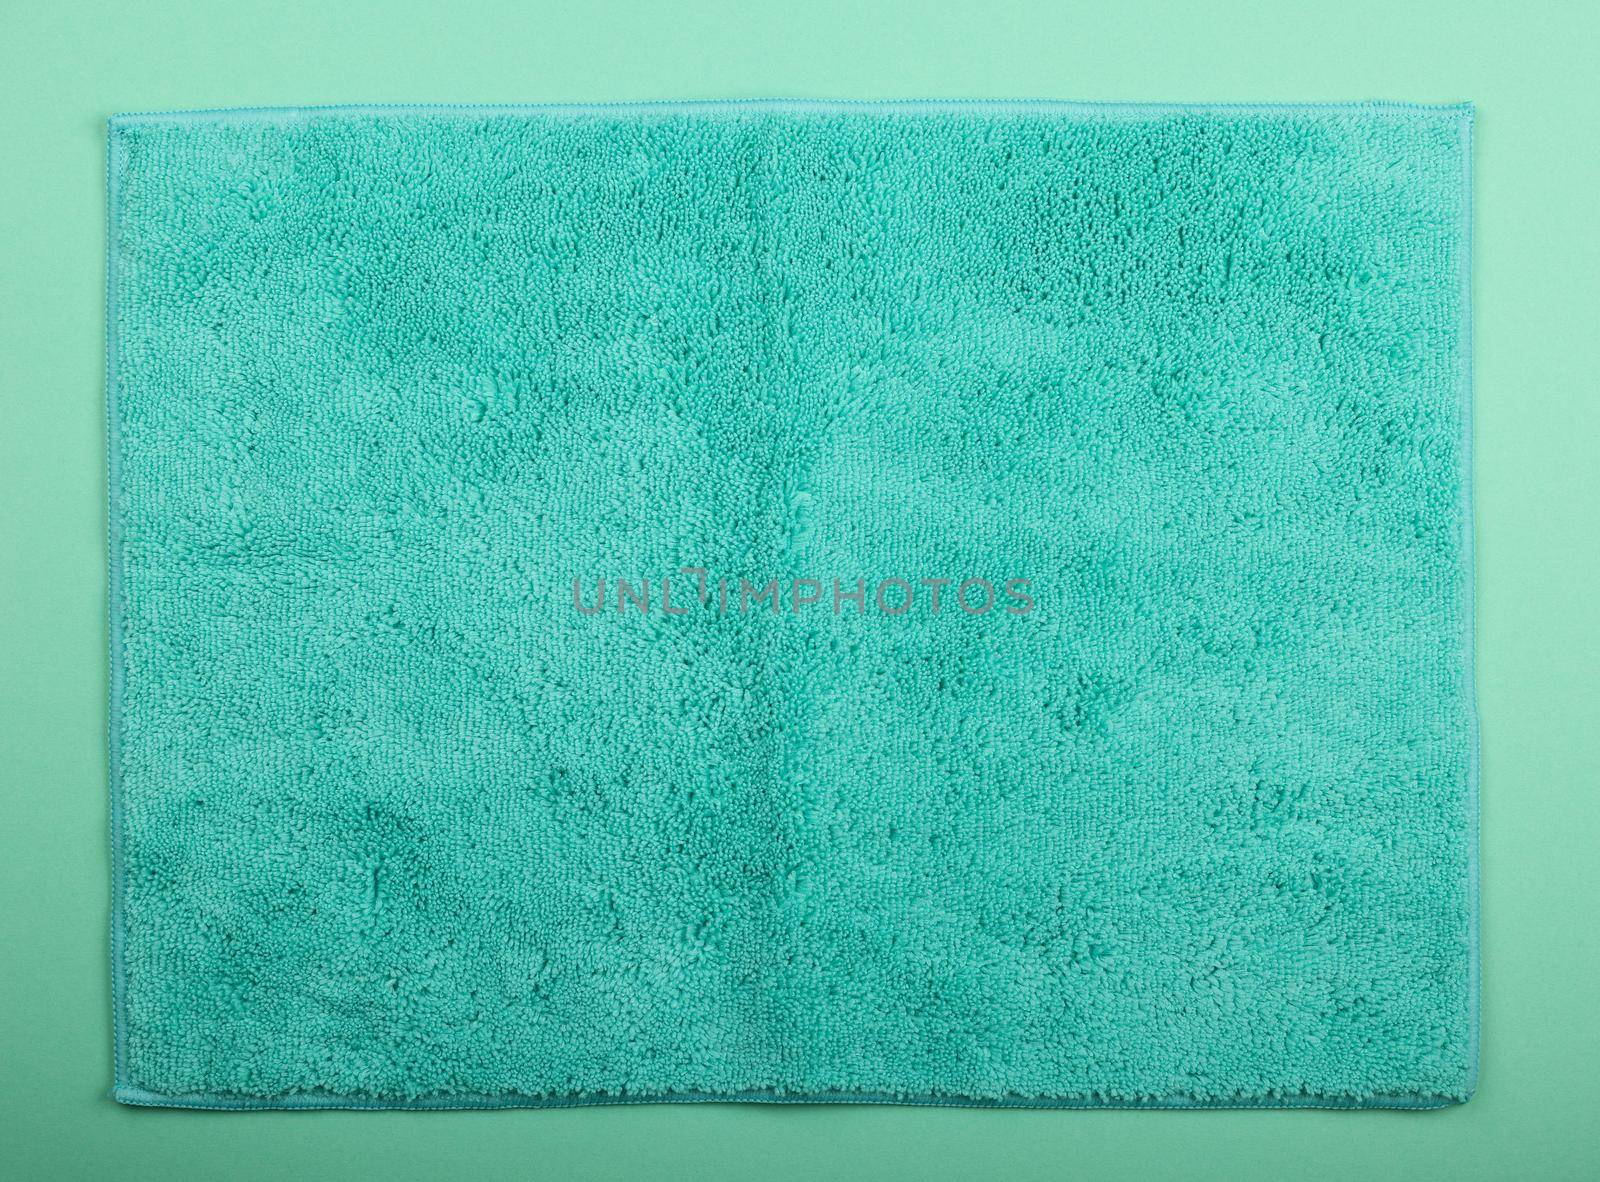 Teal blue microfiber washcloth wipe by BreakingTheWalls